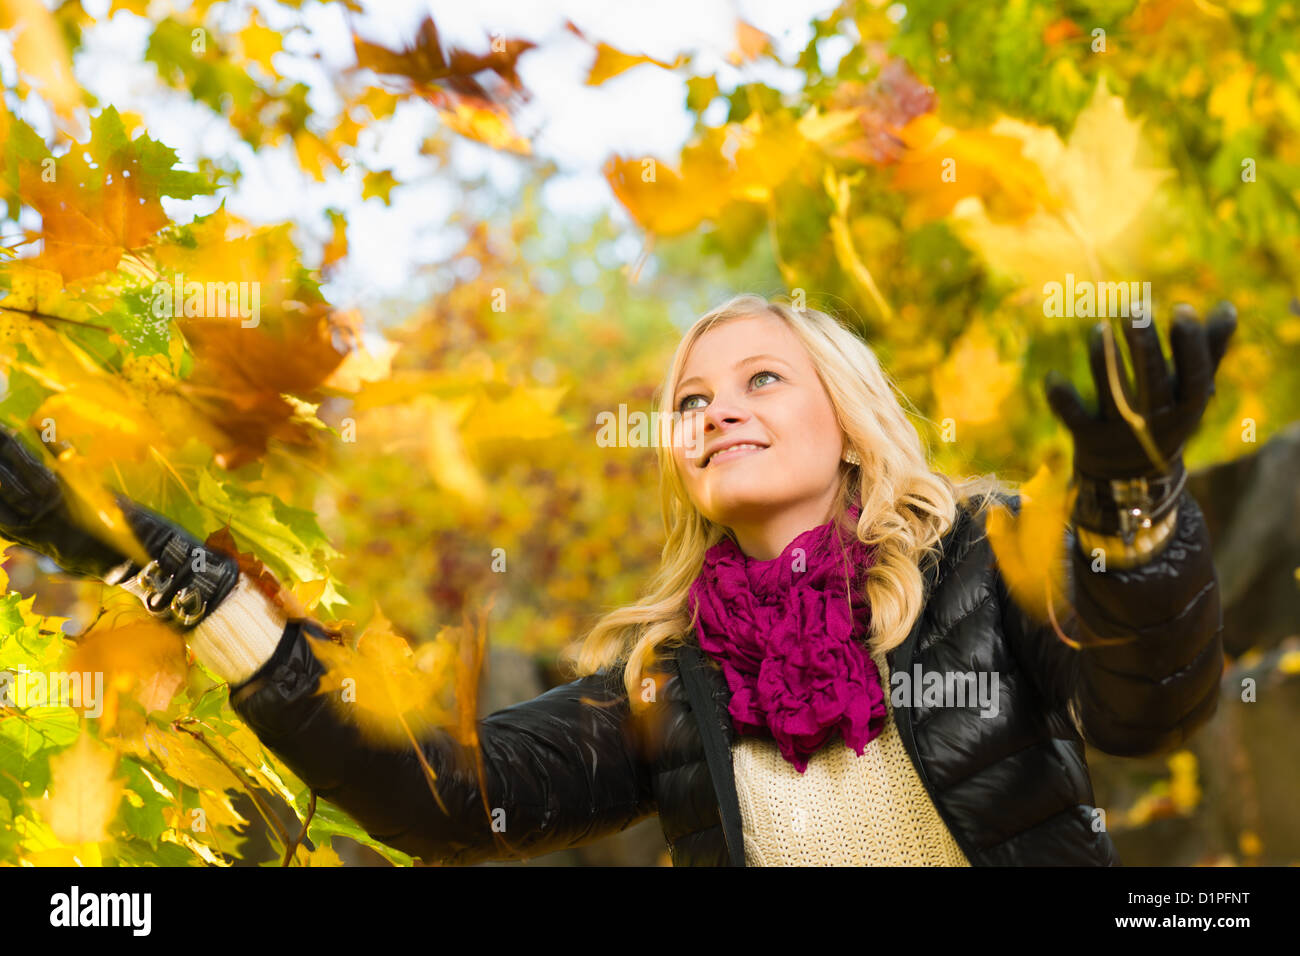 Bella ragazza e foglie che cadono, Colore di autunno, formato con orizzonte di riferimento Foto Stock